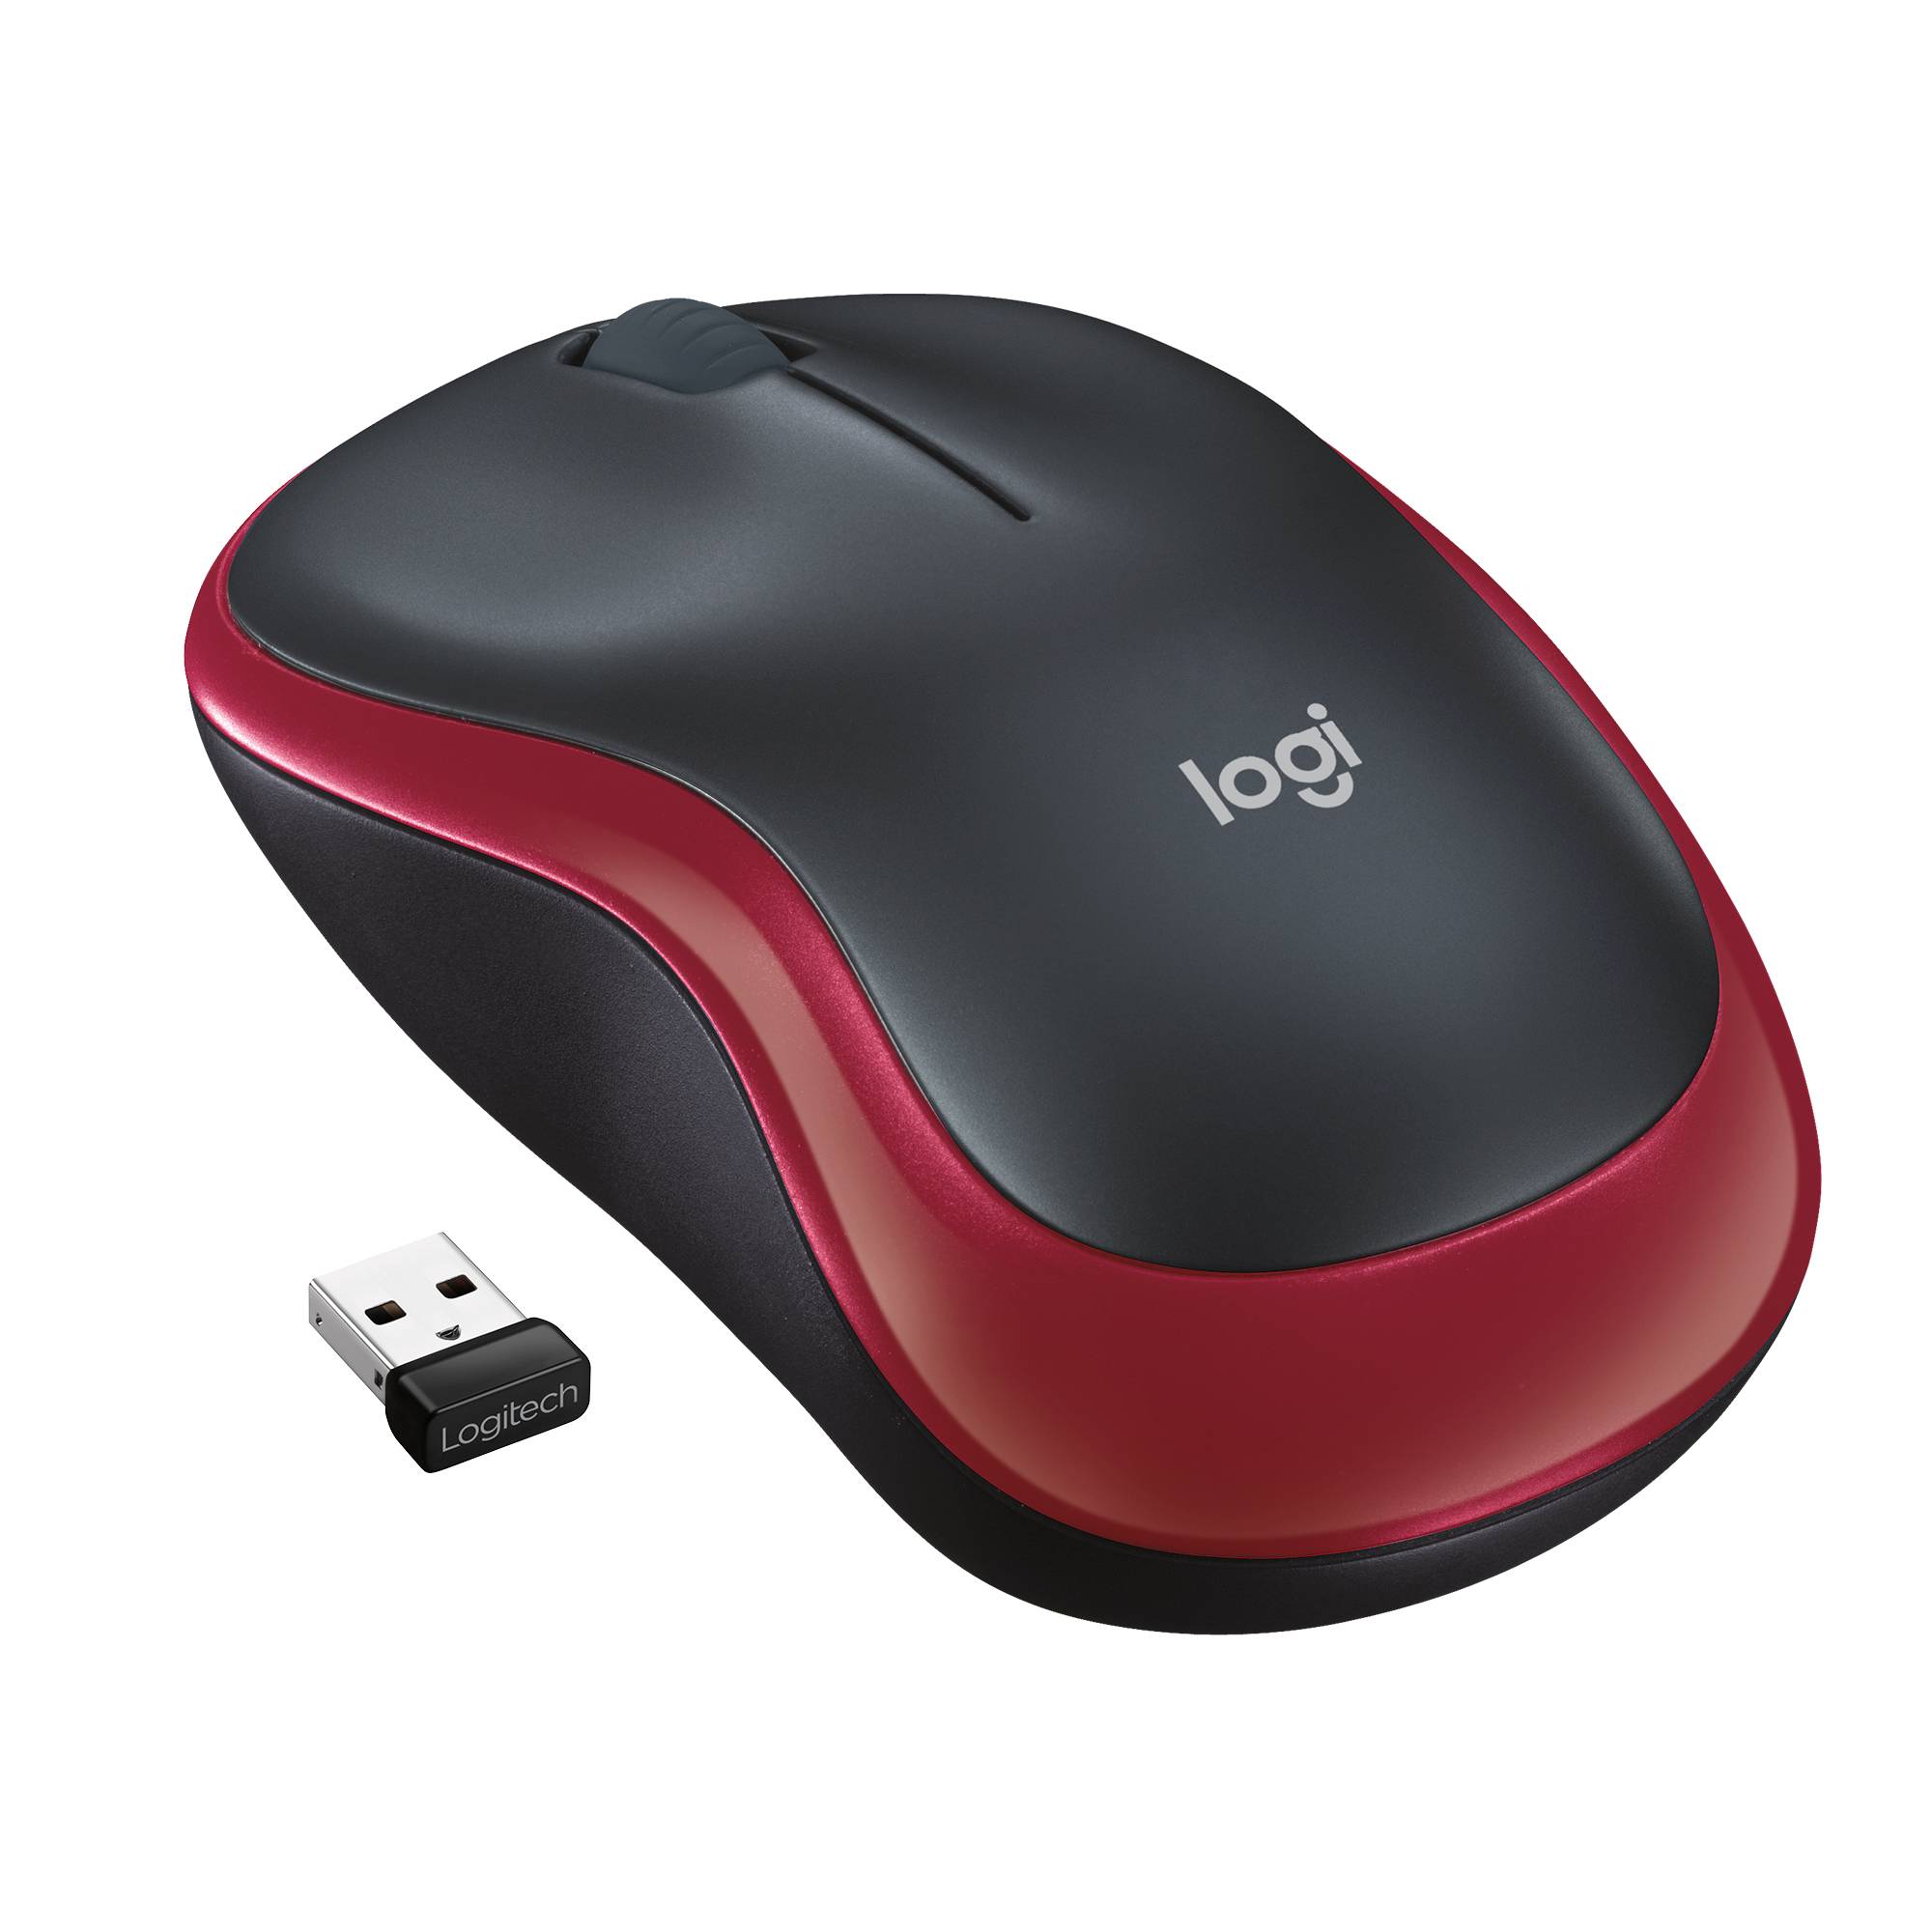 Rca Informatique - Image du produit : WIRELESS MOUSE M185 RED USB CORDLESS